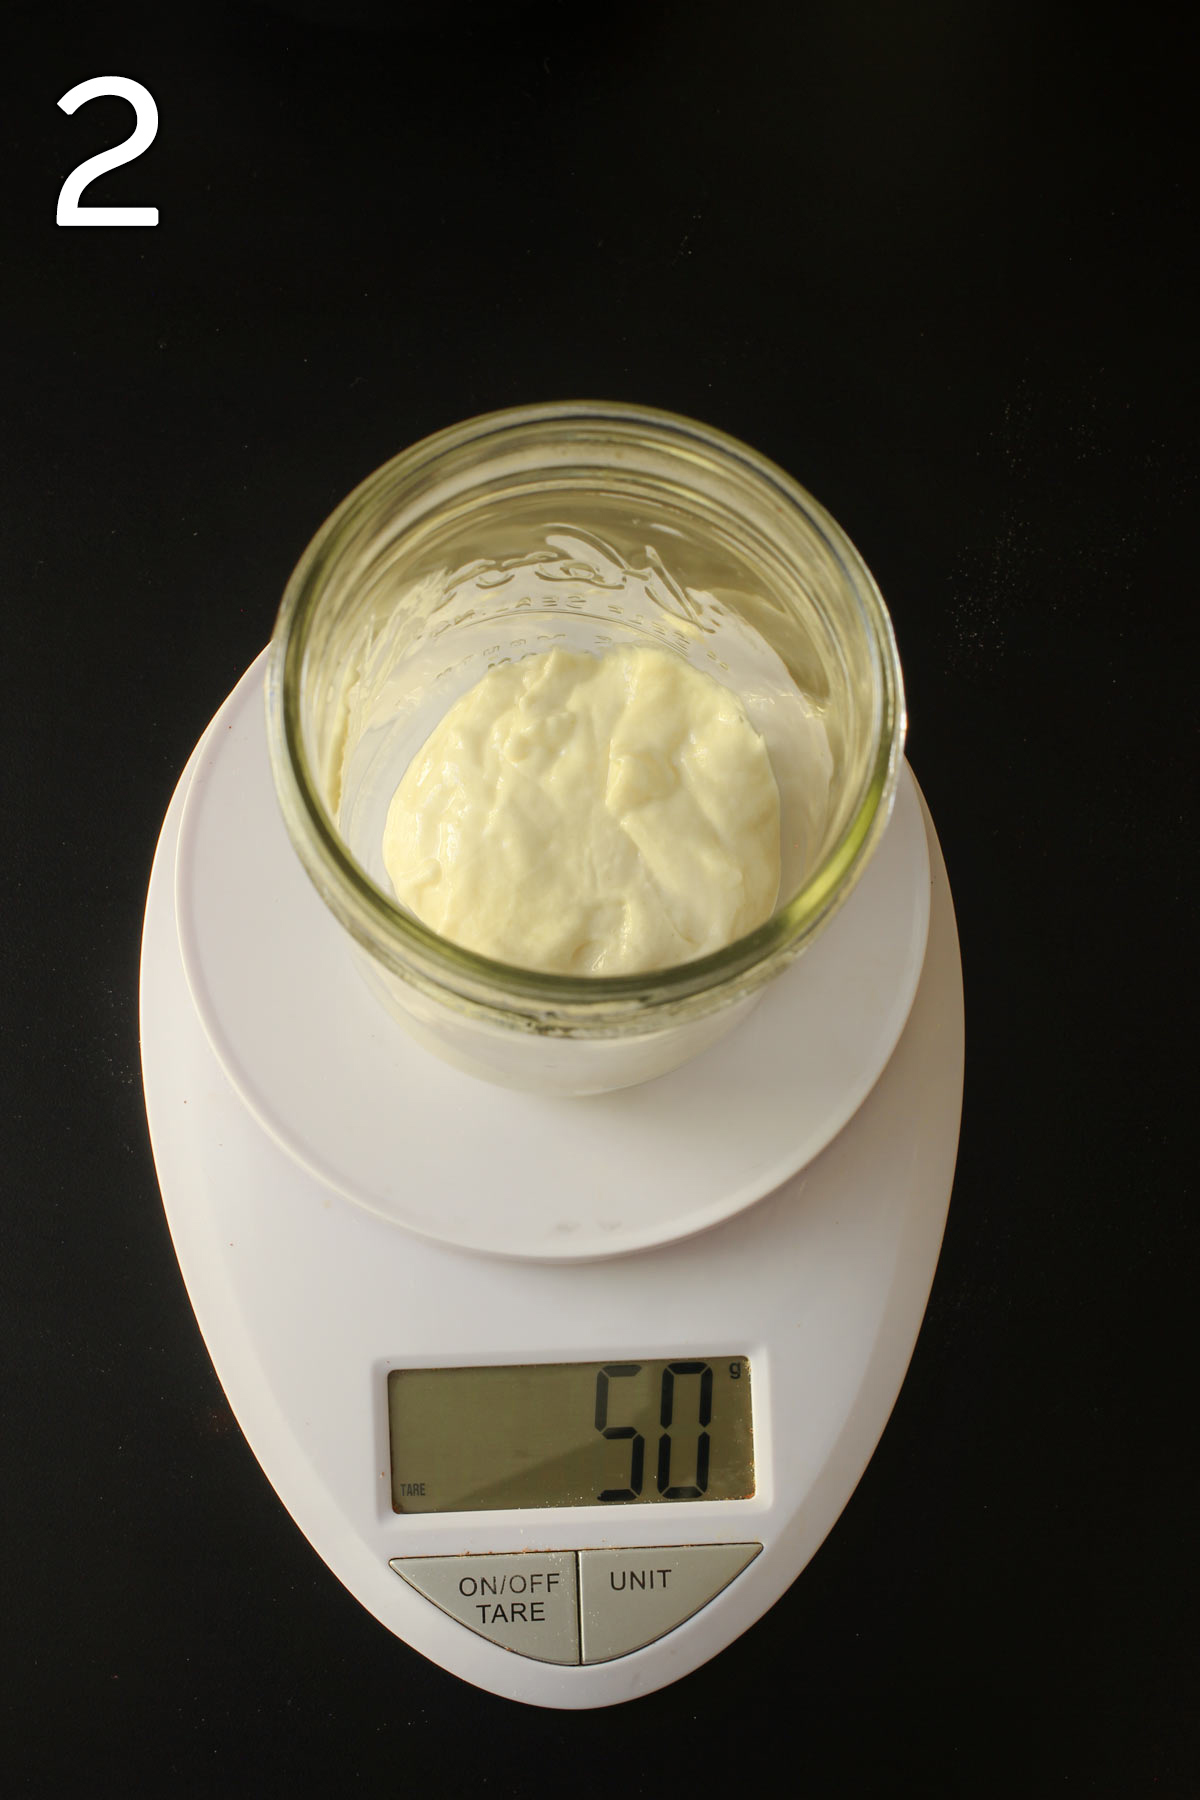 50 grams of sourdough starter in mason jar on scale.